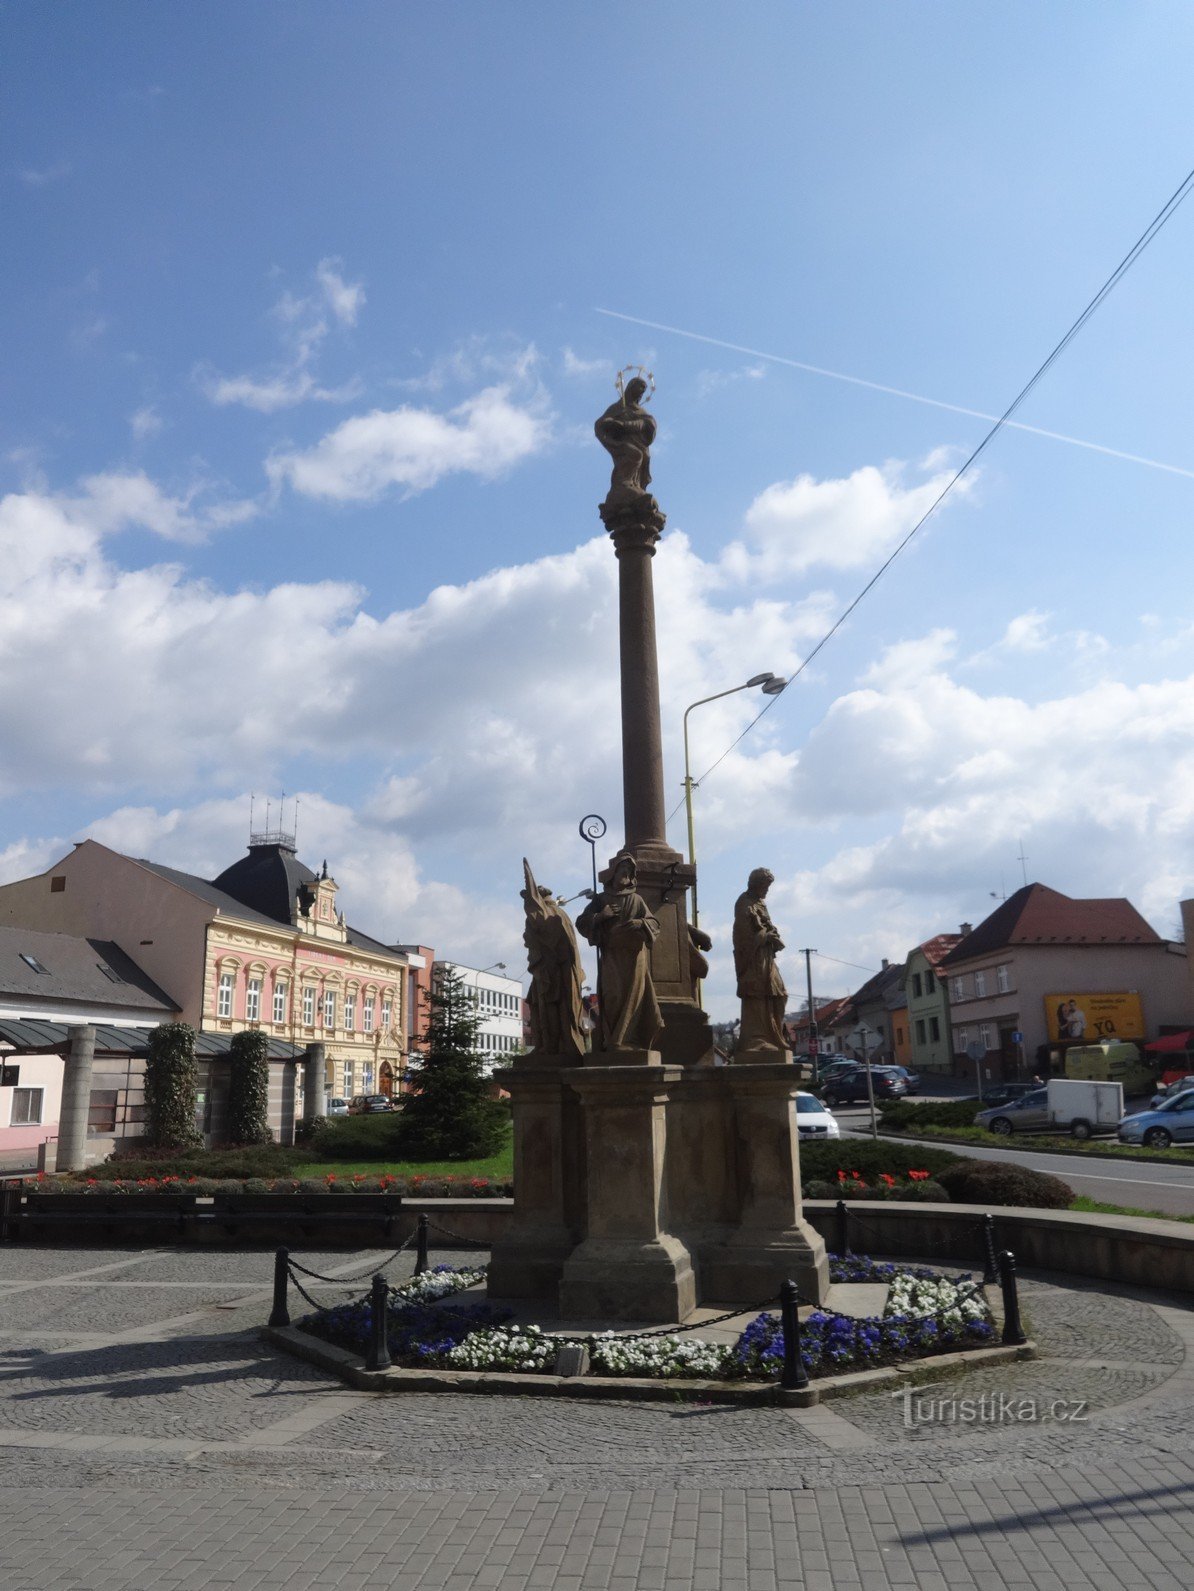 Vizovice - Säule mit der Statue der Schmerzhaften Jungfrau Maria auf dem Masaryk-Platz